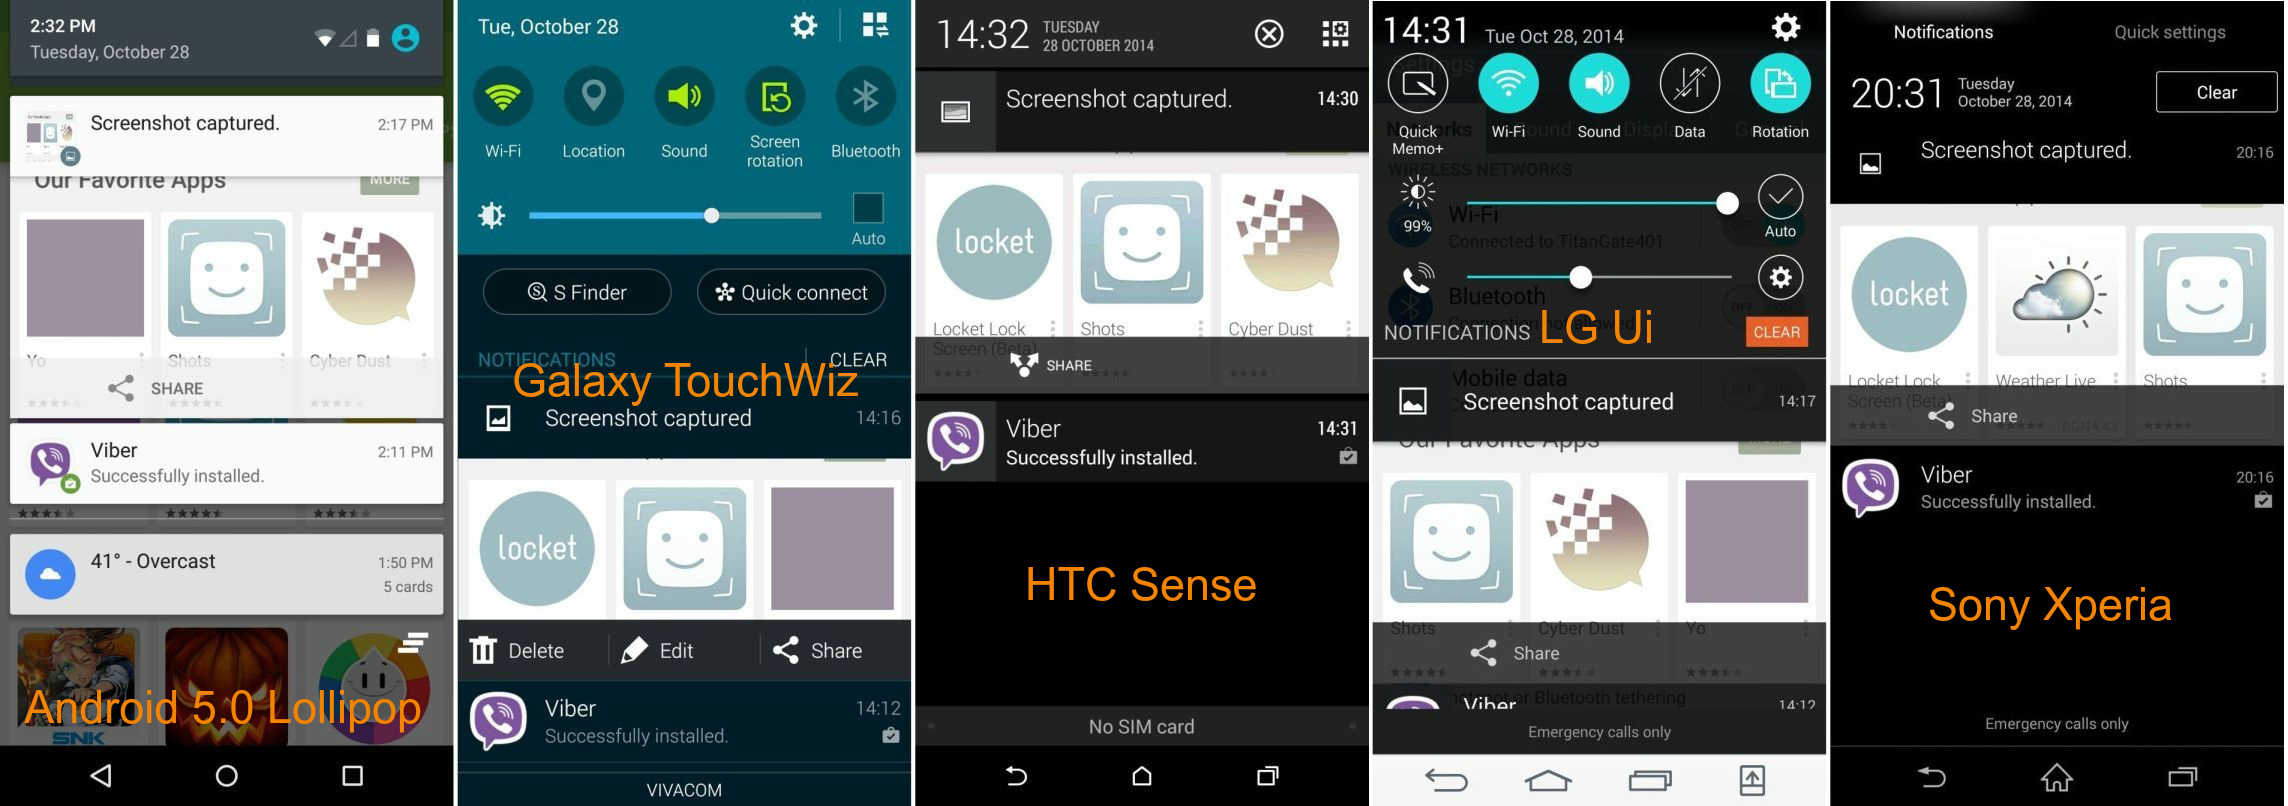 Centre-de-notifications-Android-5.0-Lollipop-TouchWiz-Sense-LG-Sony-Xperia